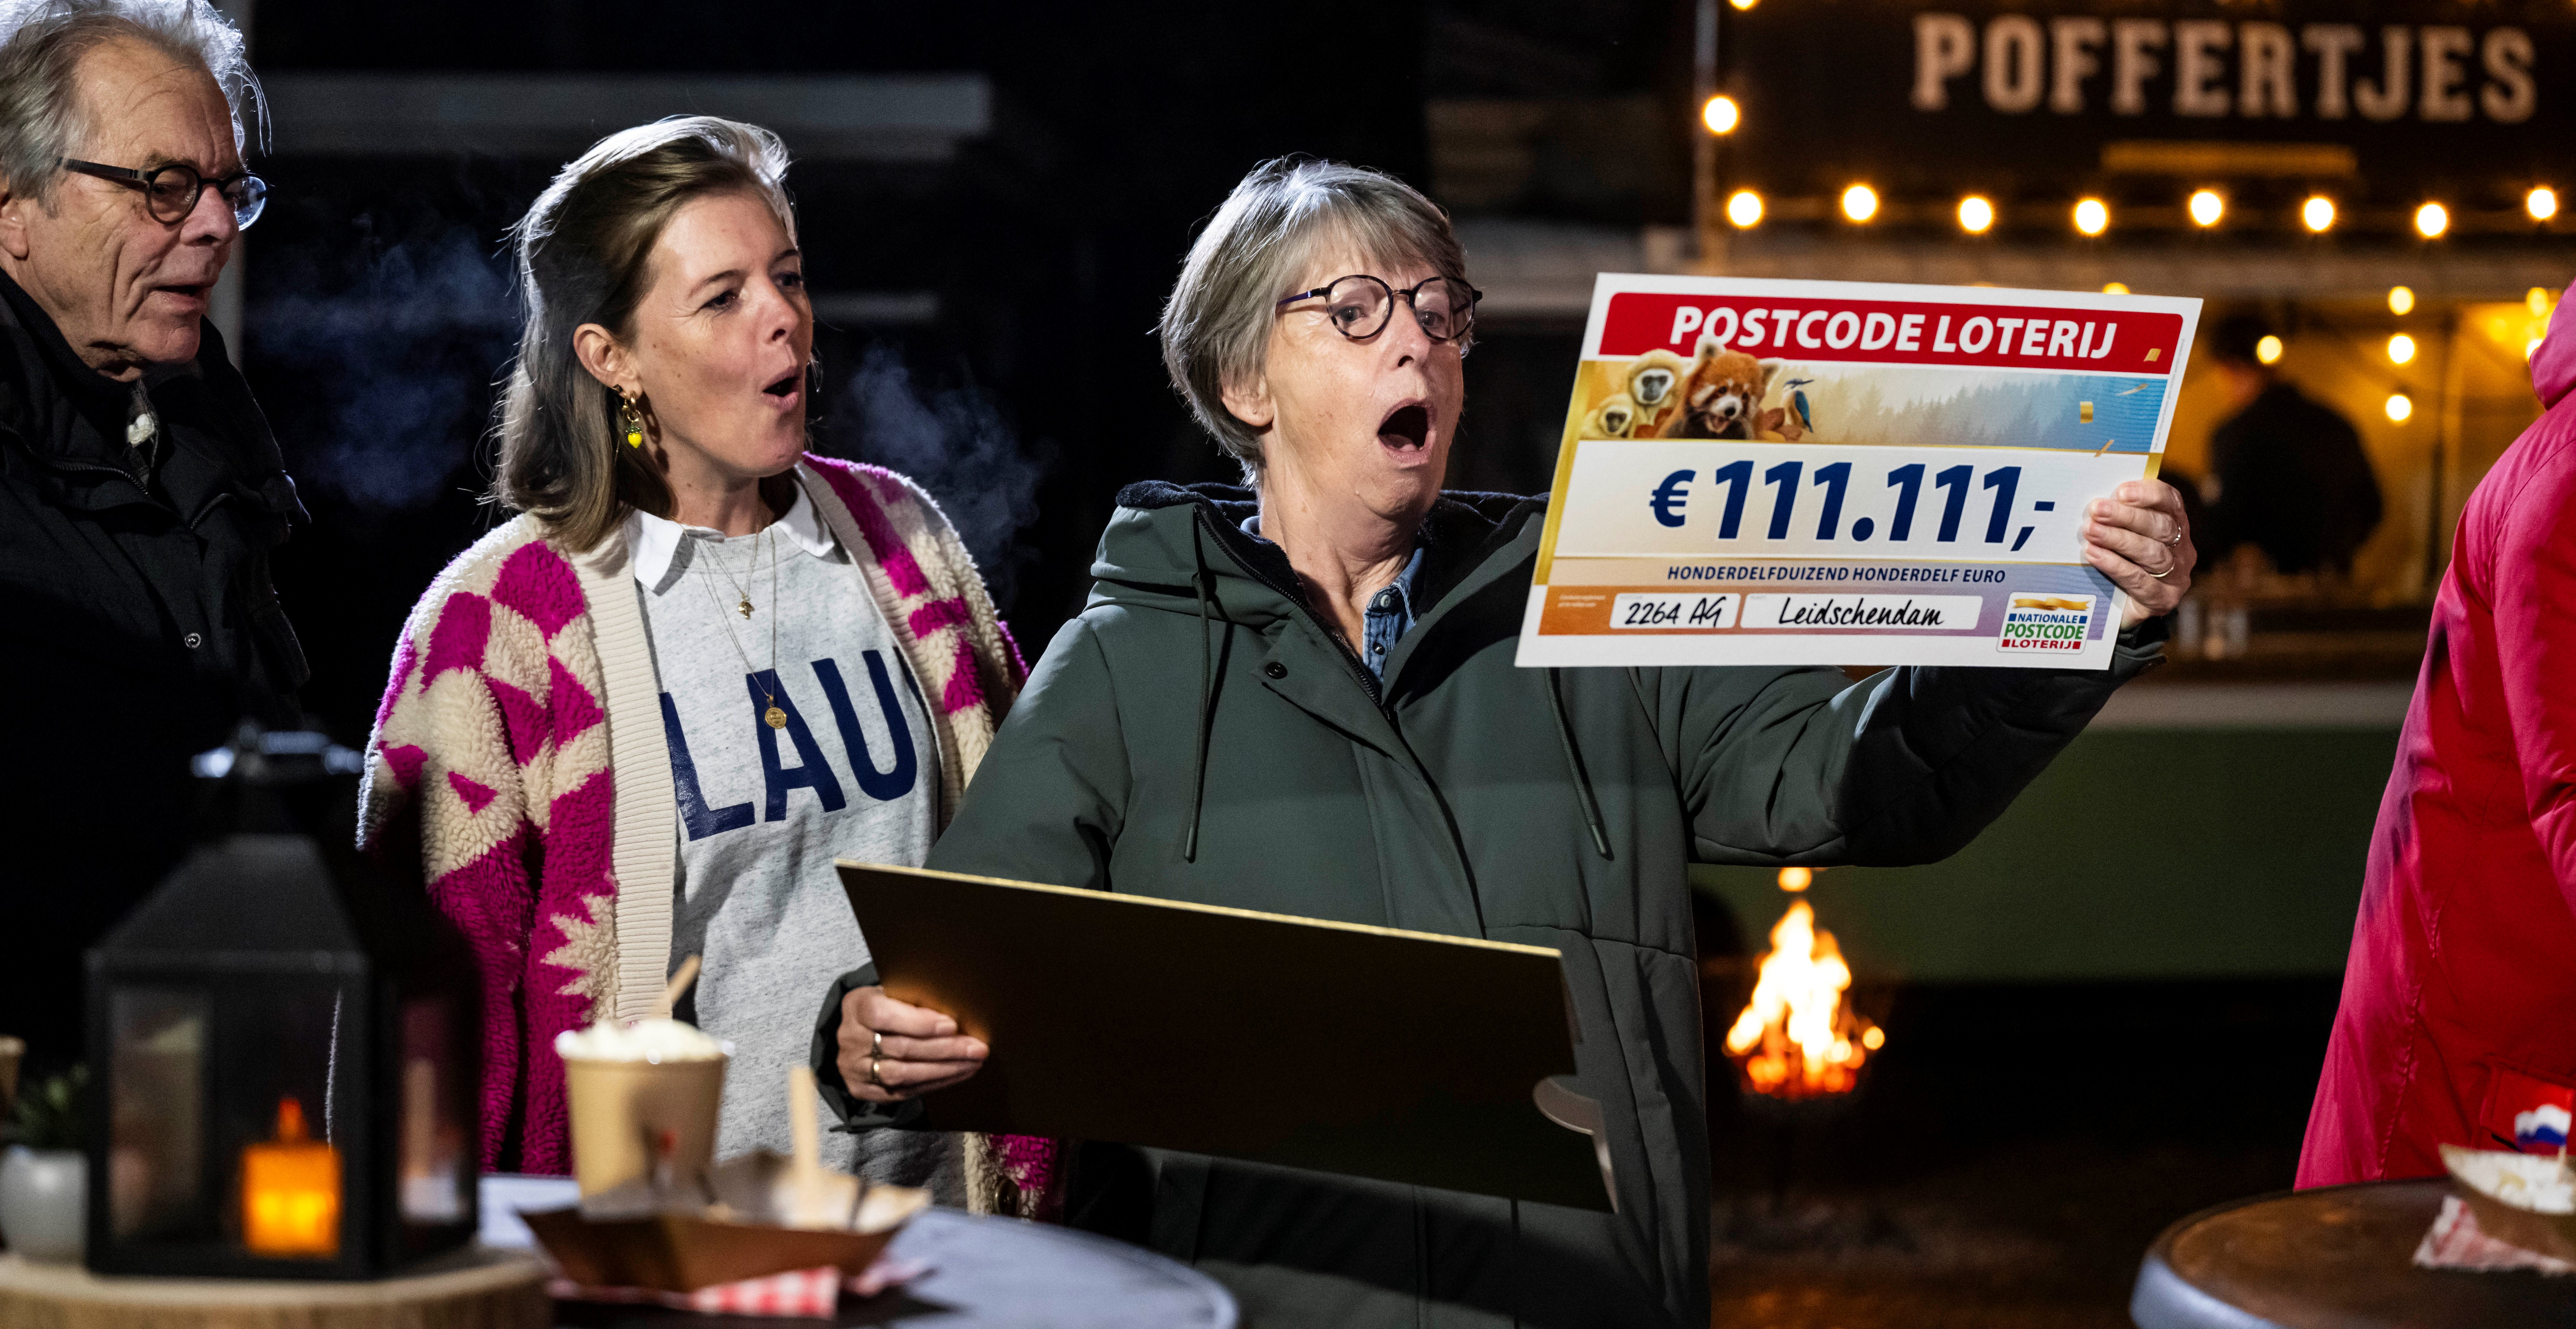 Elly uit Leidschendam wint 111111 euro